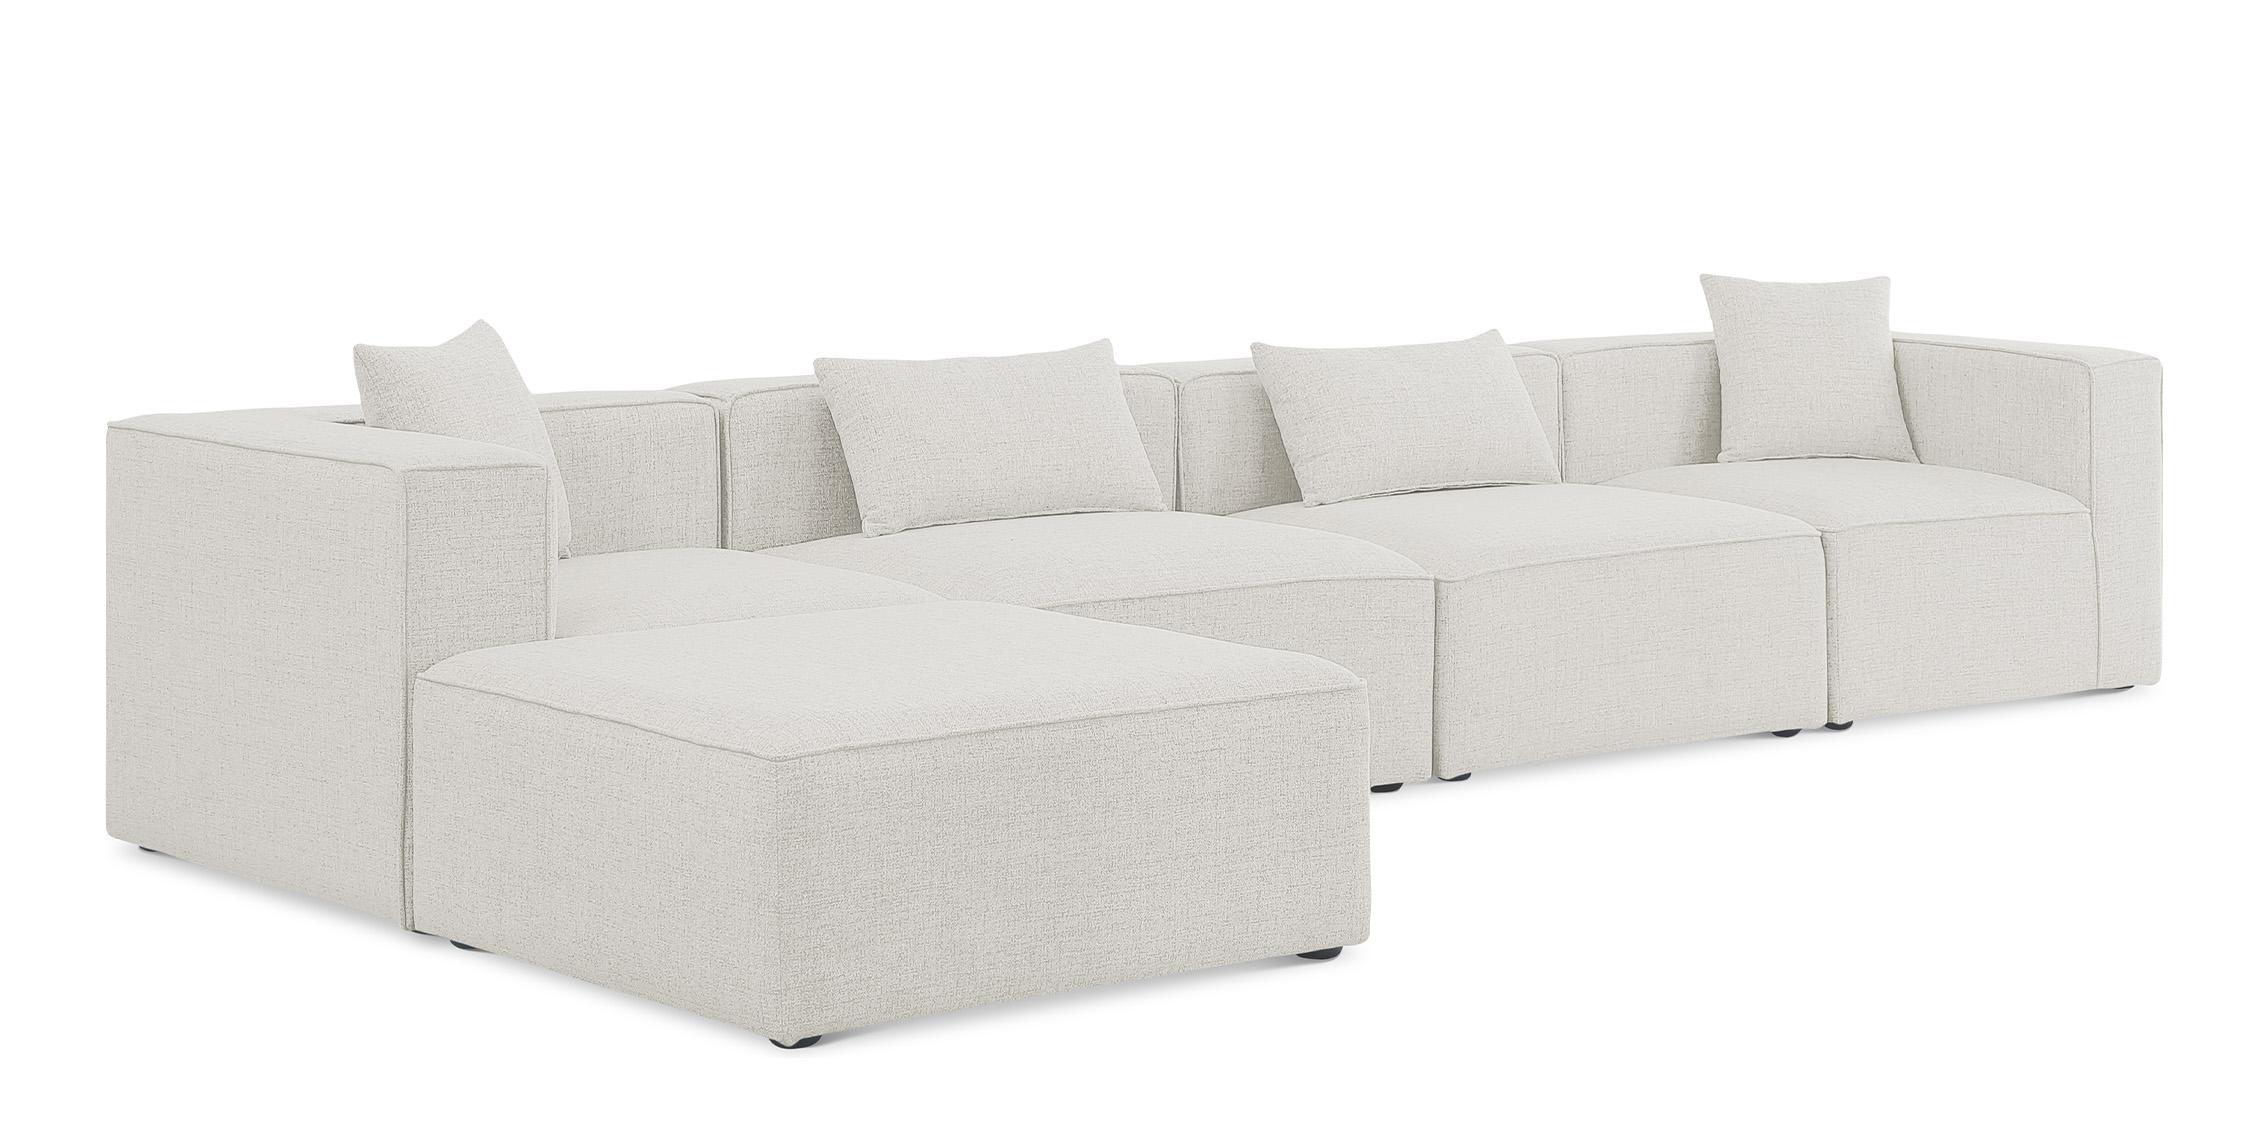 Contemporary, Modern Modular Sectional Sofa CUBE 630Cream-Sec5A 630Cream-Sec5A in Cream Linen